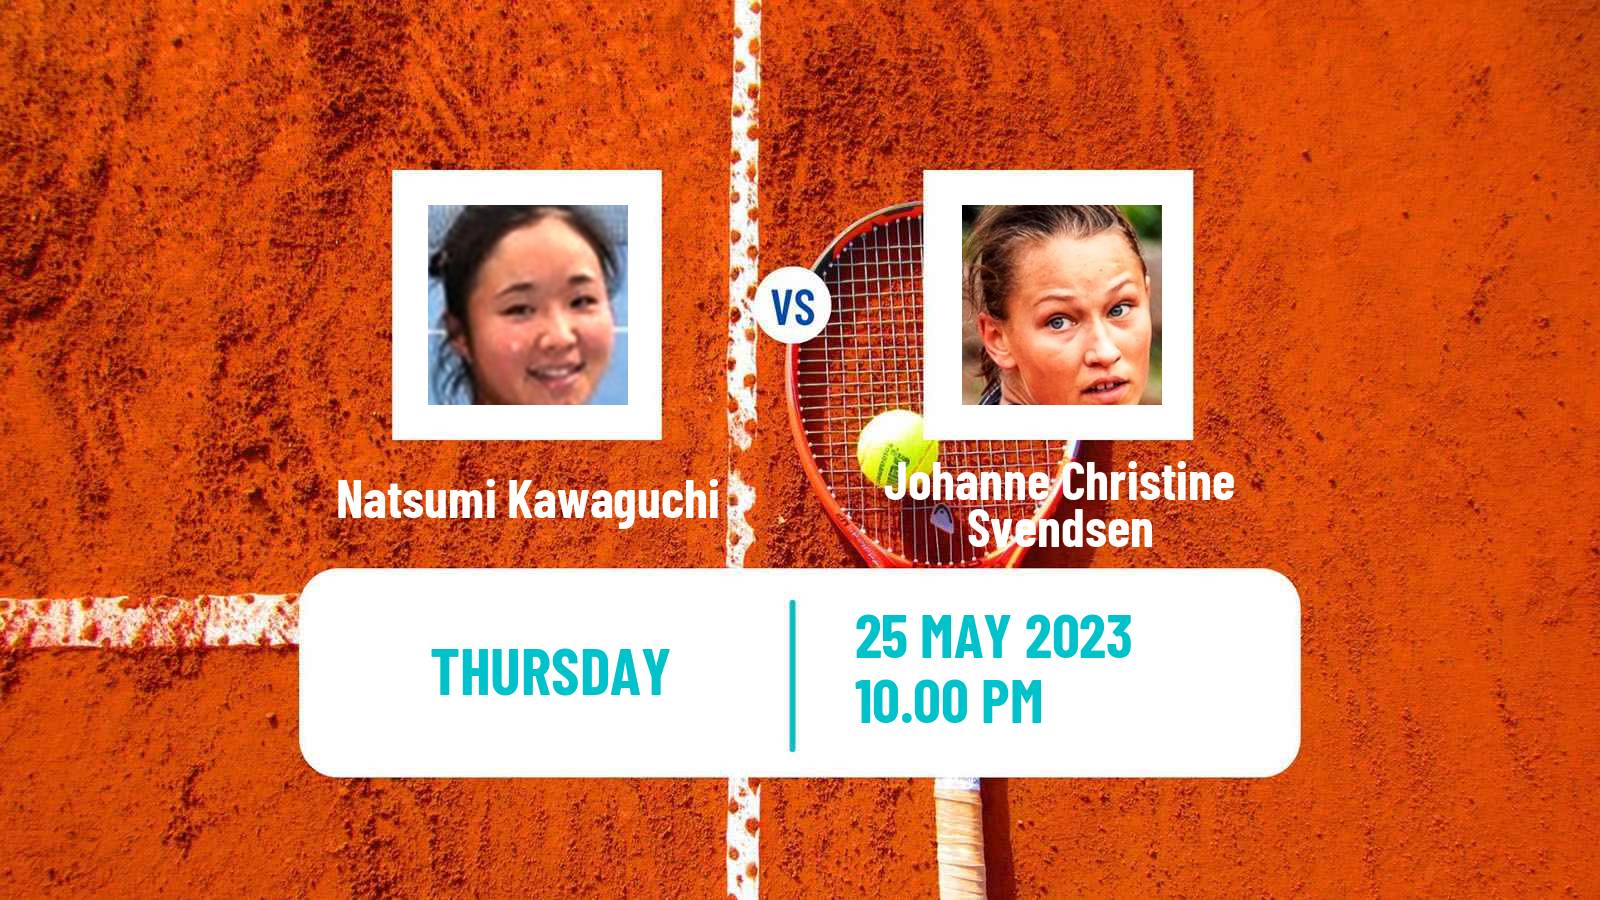 Tennis ITF W25 Karuizawa Women Natsumi Kawaguchi - Johanne Christine Svendsen